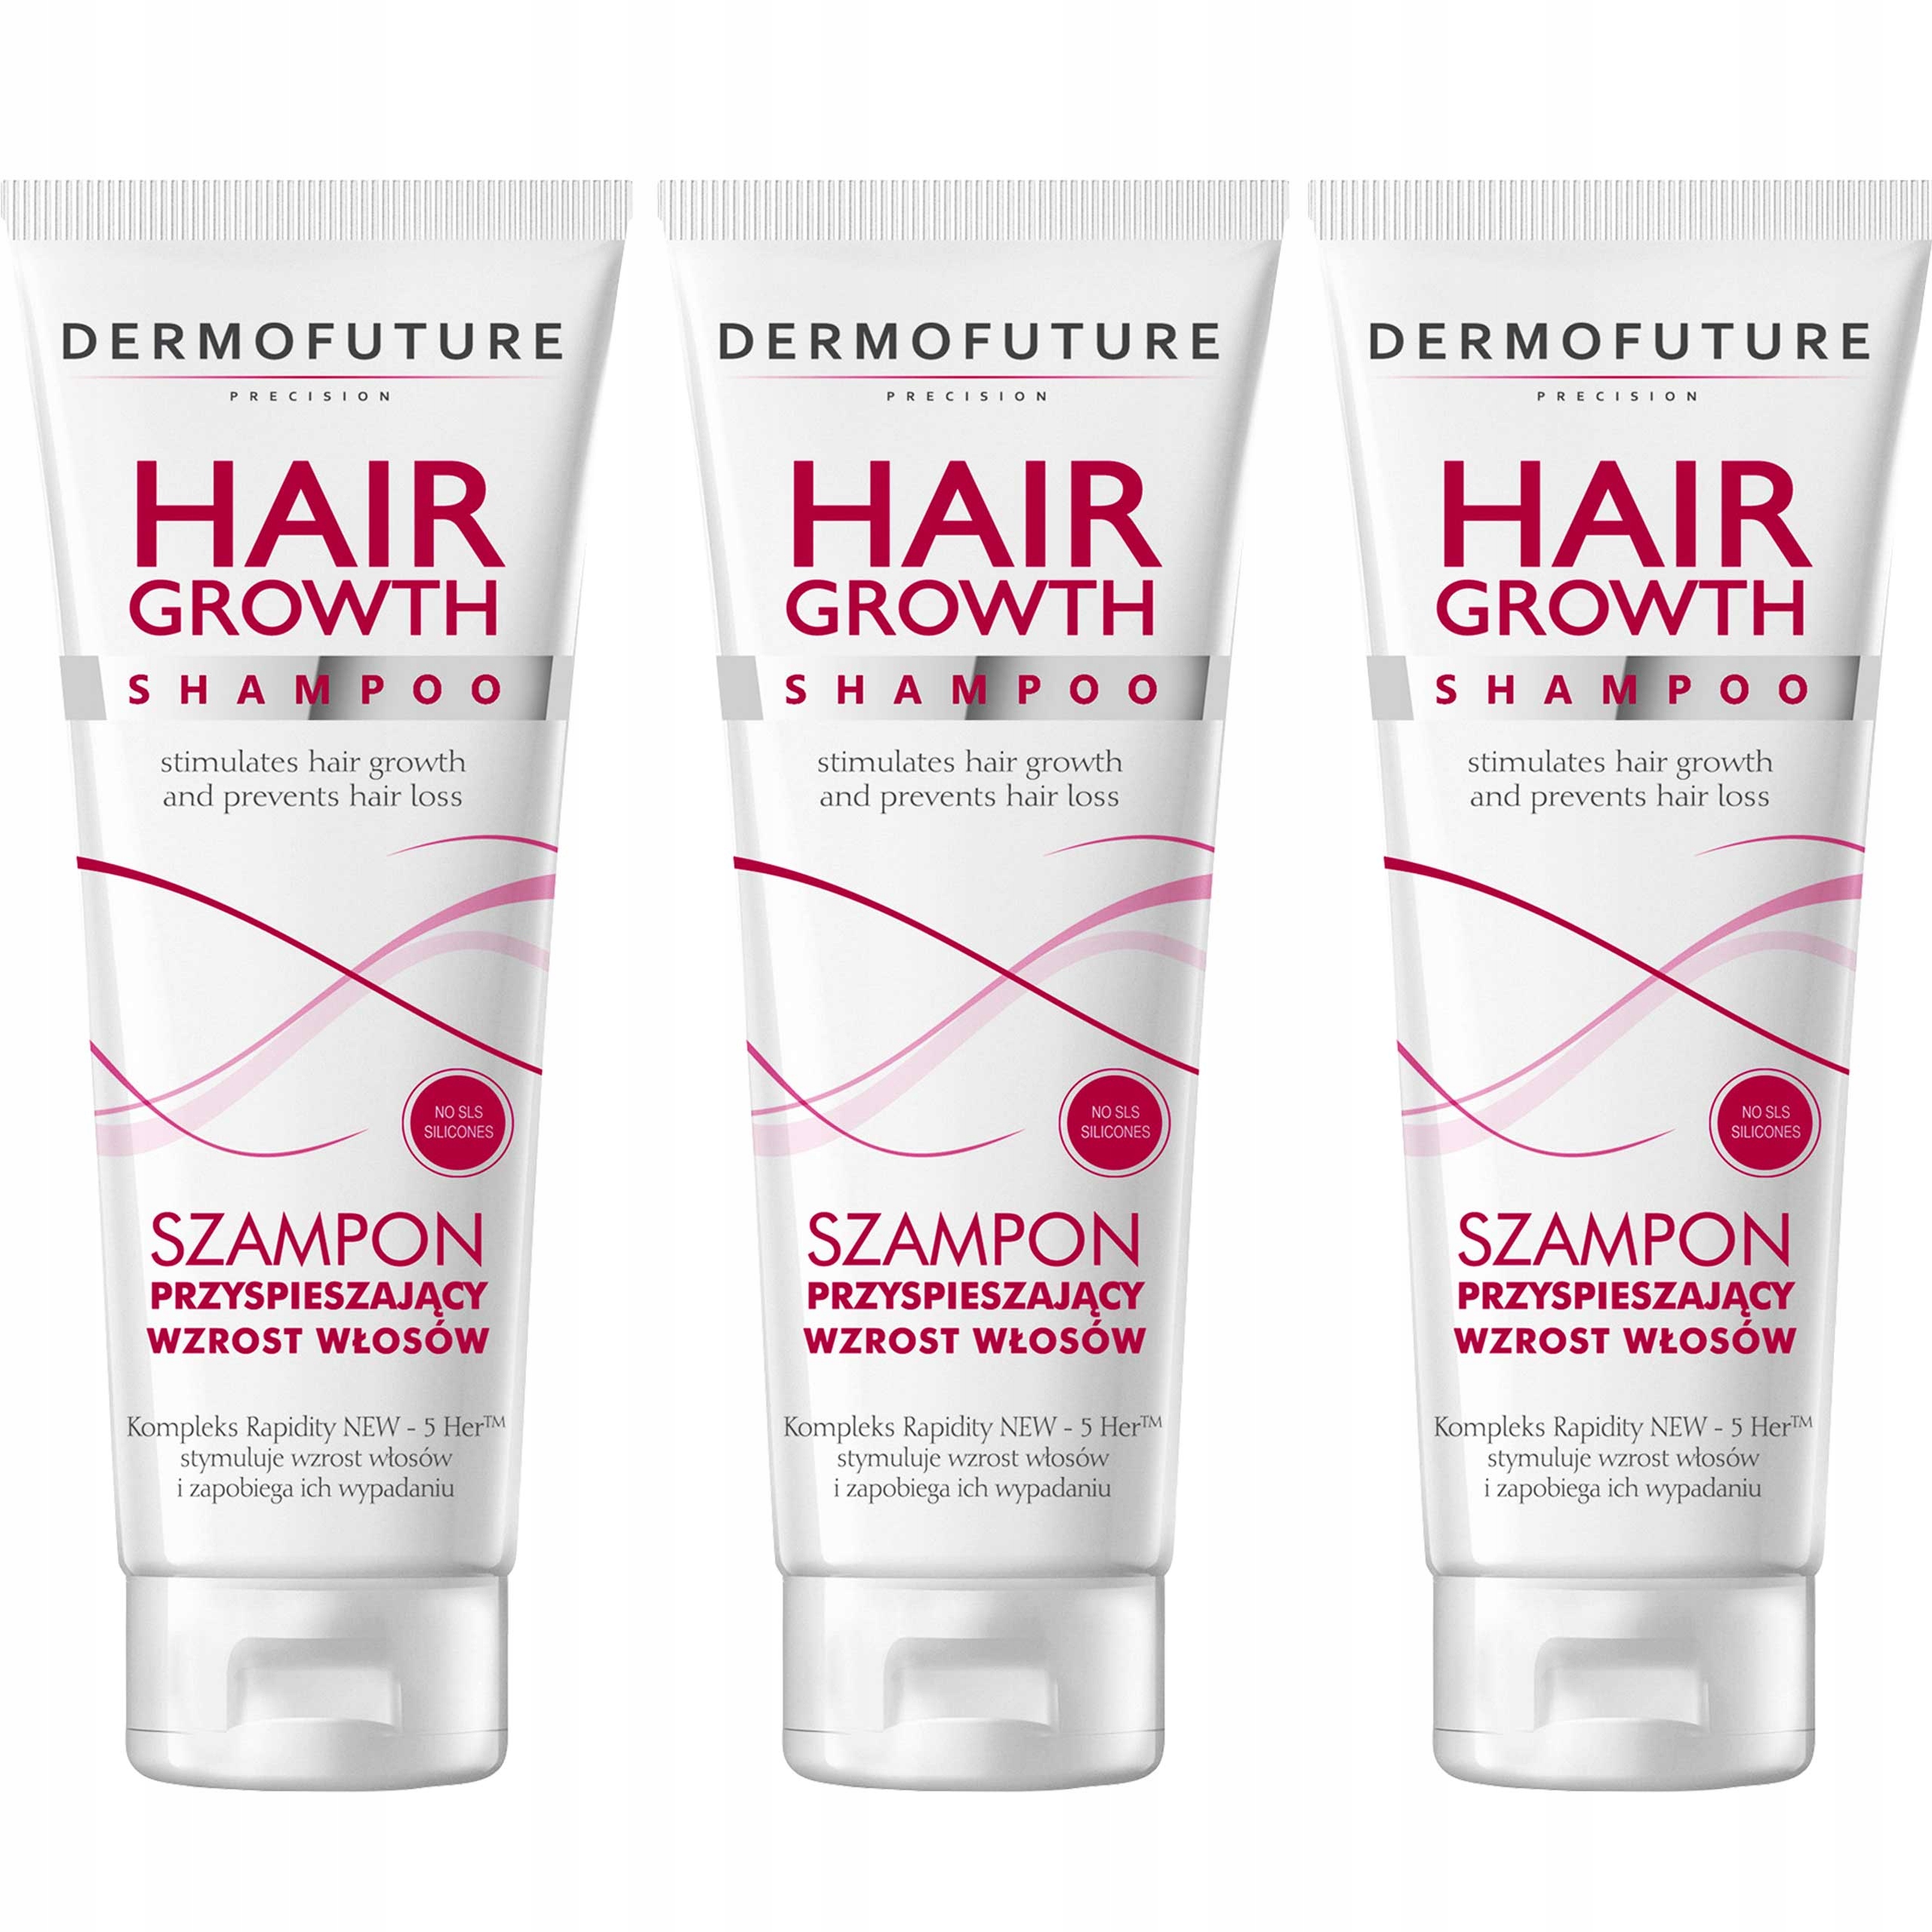 dermofuture hair growth szampon przyspieszający wzrost włosów